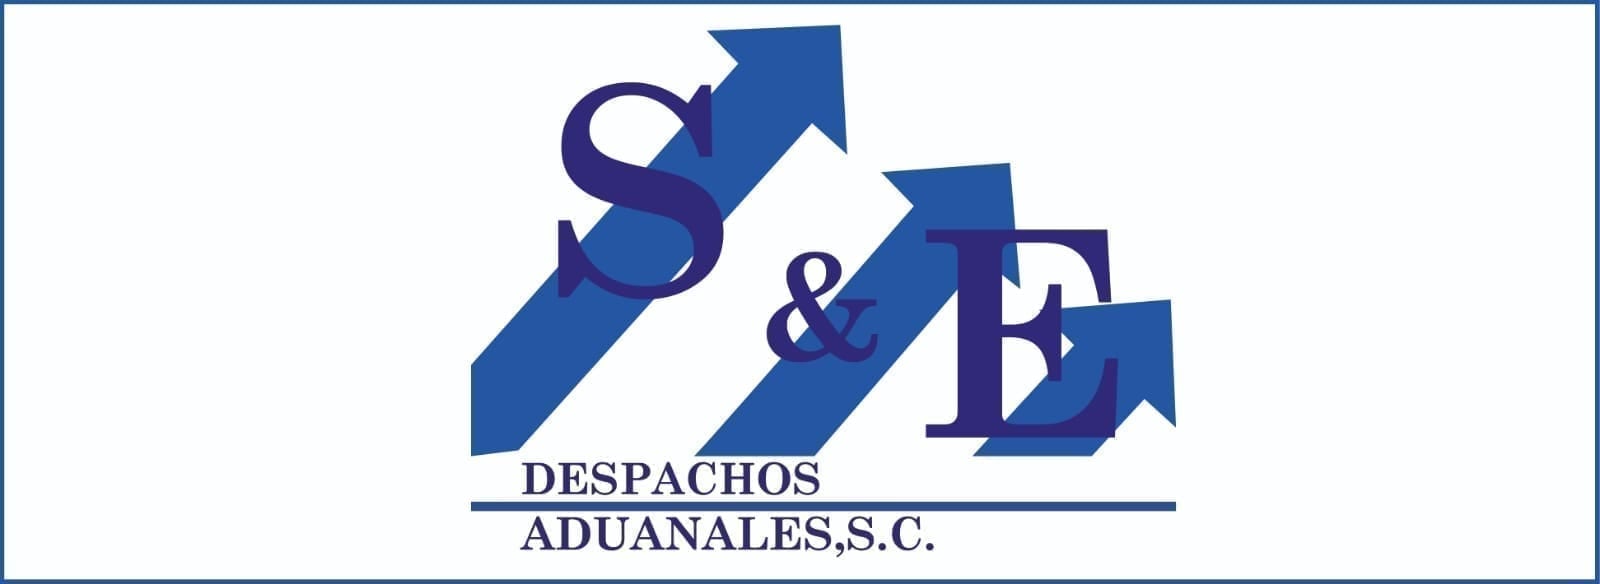 Santizo & Egremy Despachos Aduanales, S.C.